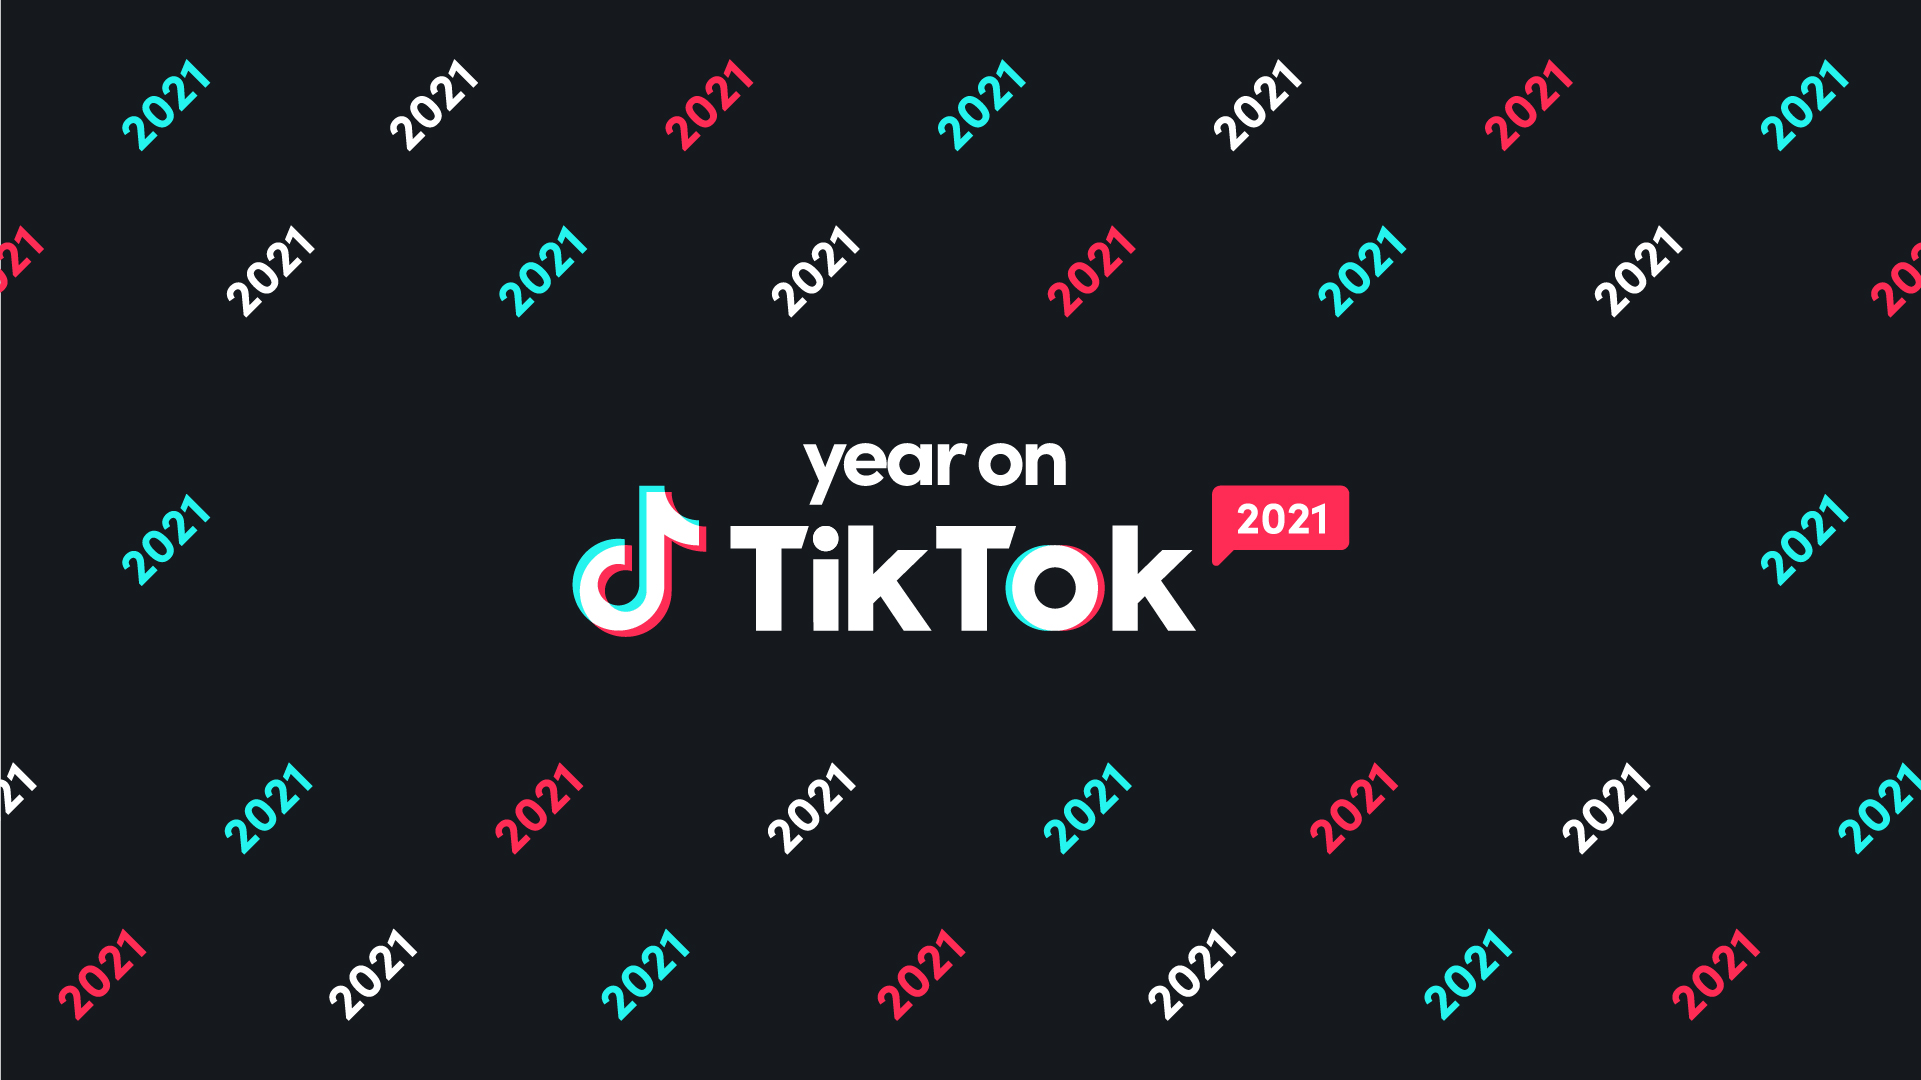 TikTok đã đưa chúng ta trải nghiệm đầy màu sắc và thú vị trong suốt một năm qua. Để tổng kết cho một năm đầy ấn tượng này, hãy đến xem \